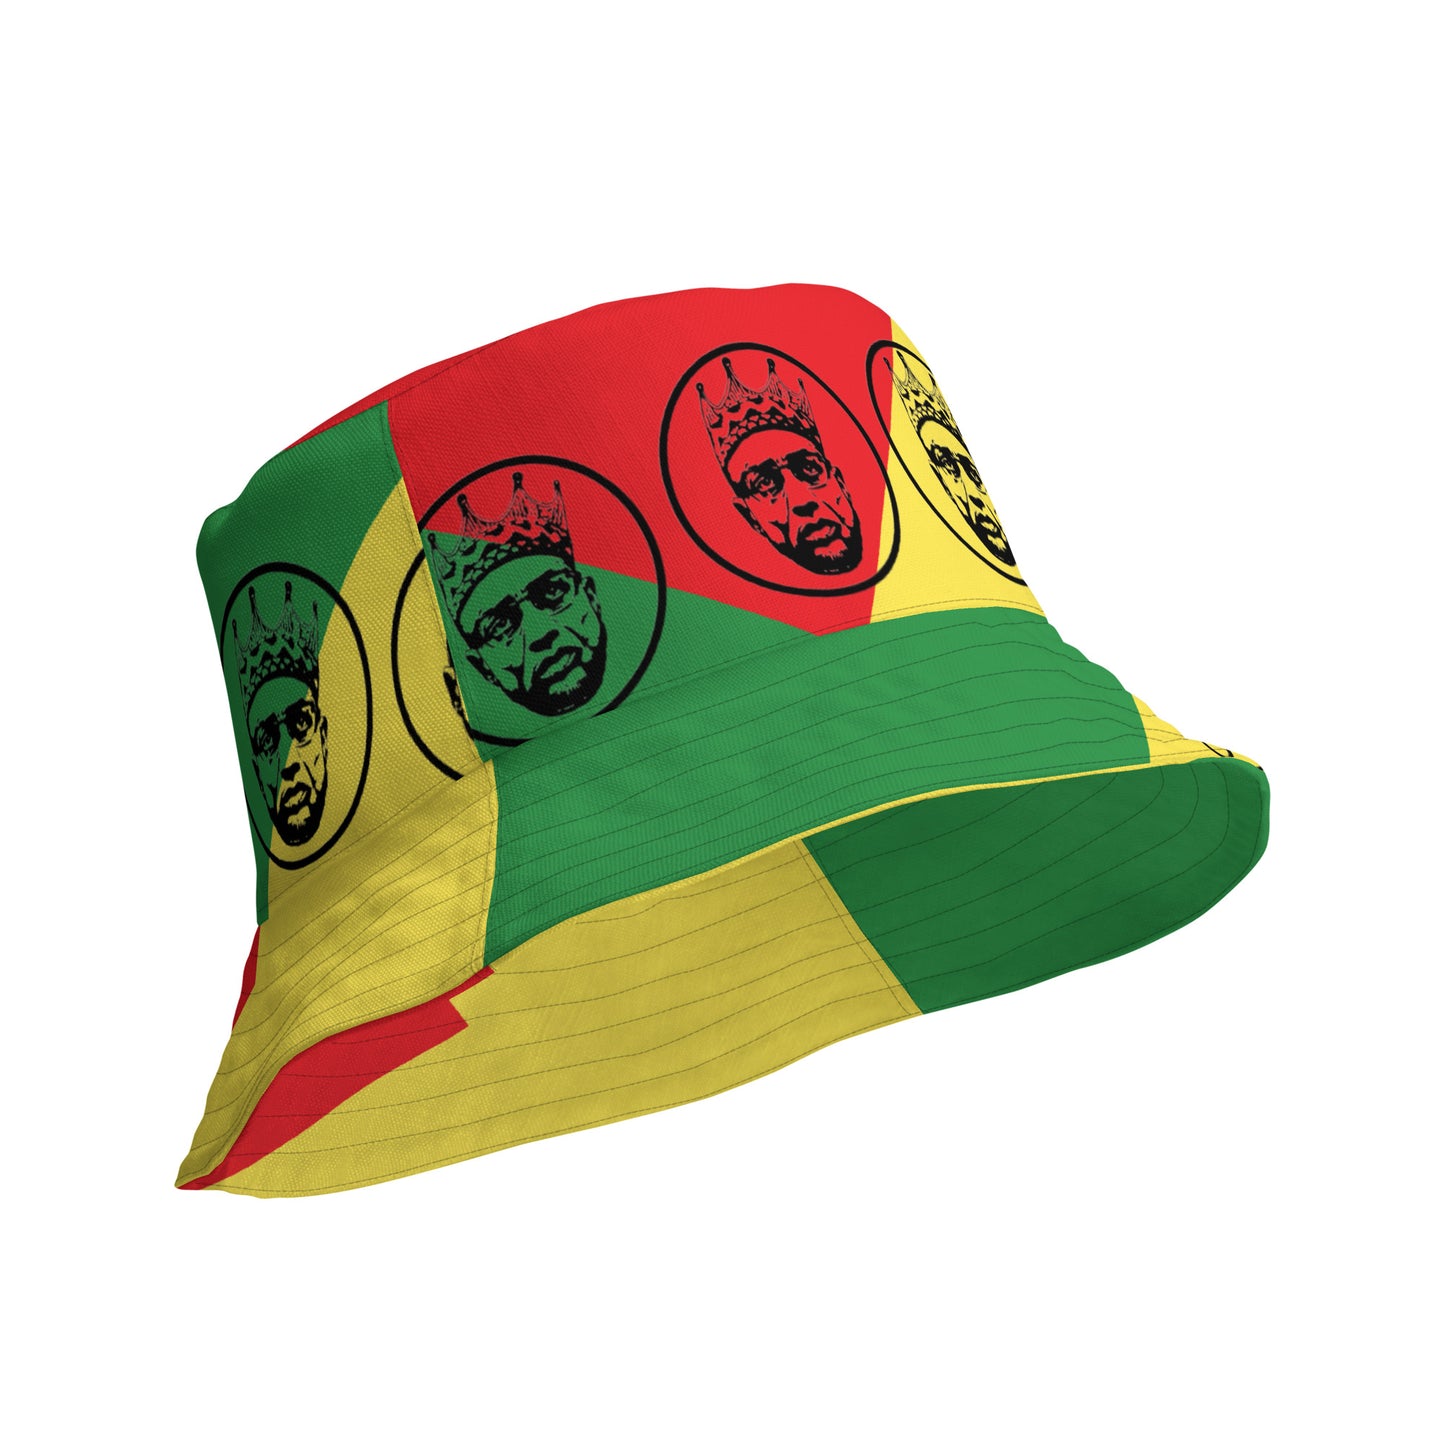 CvLs OF/Amilcar Cabral Reversible bucket hat